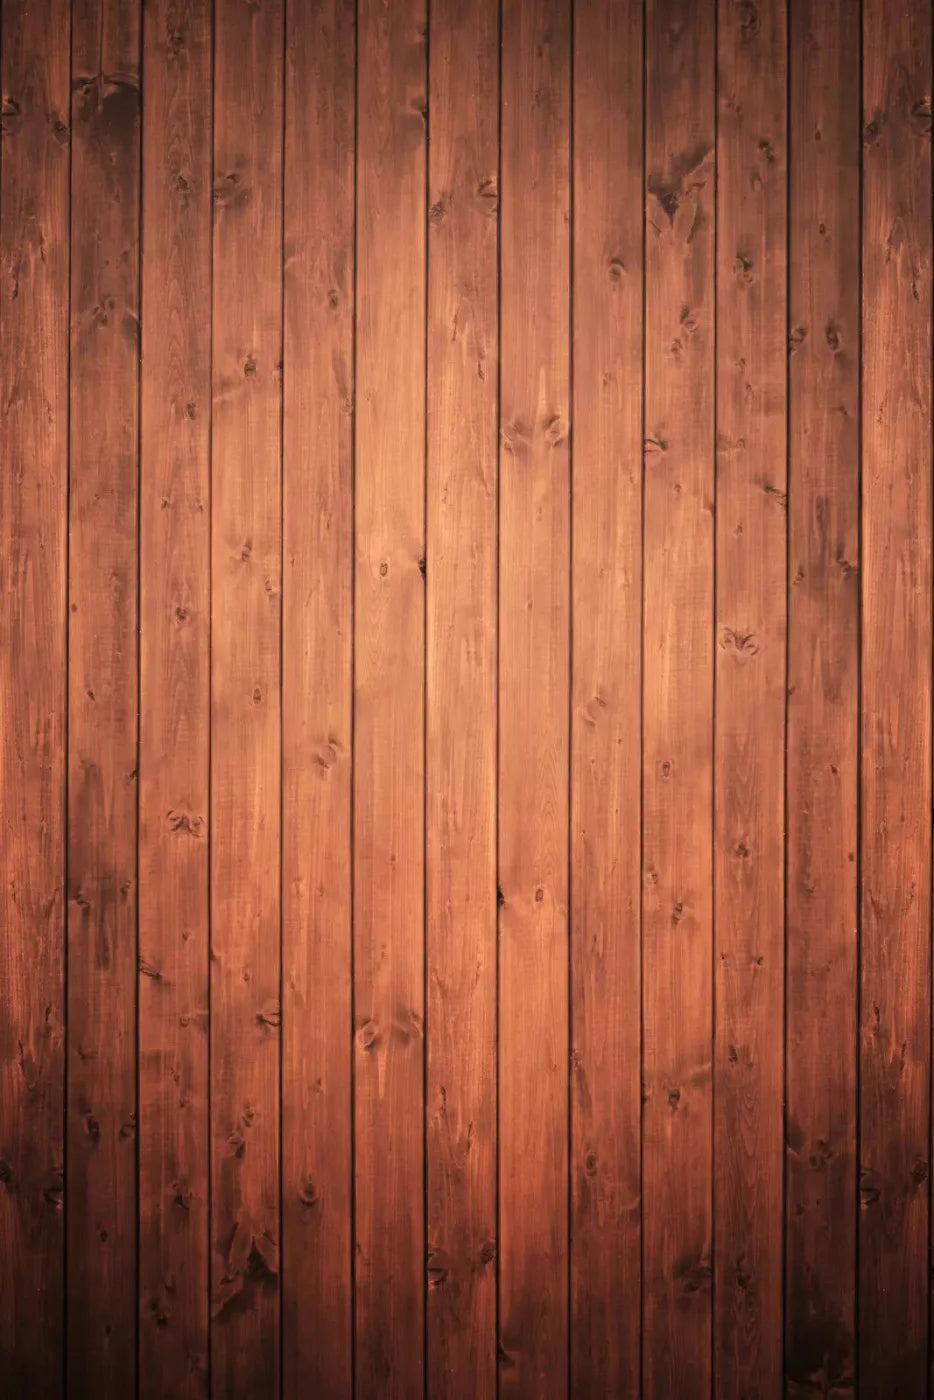 Warm Wooden Wall 4X5 Rubbermat Floor ( 48 X 60 Inch ) Backdrop